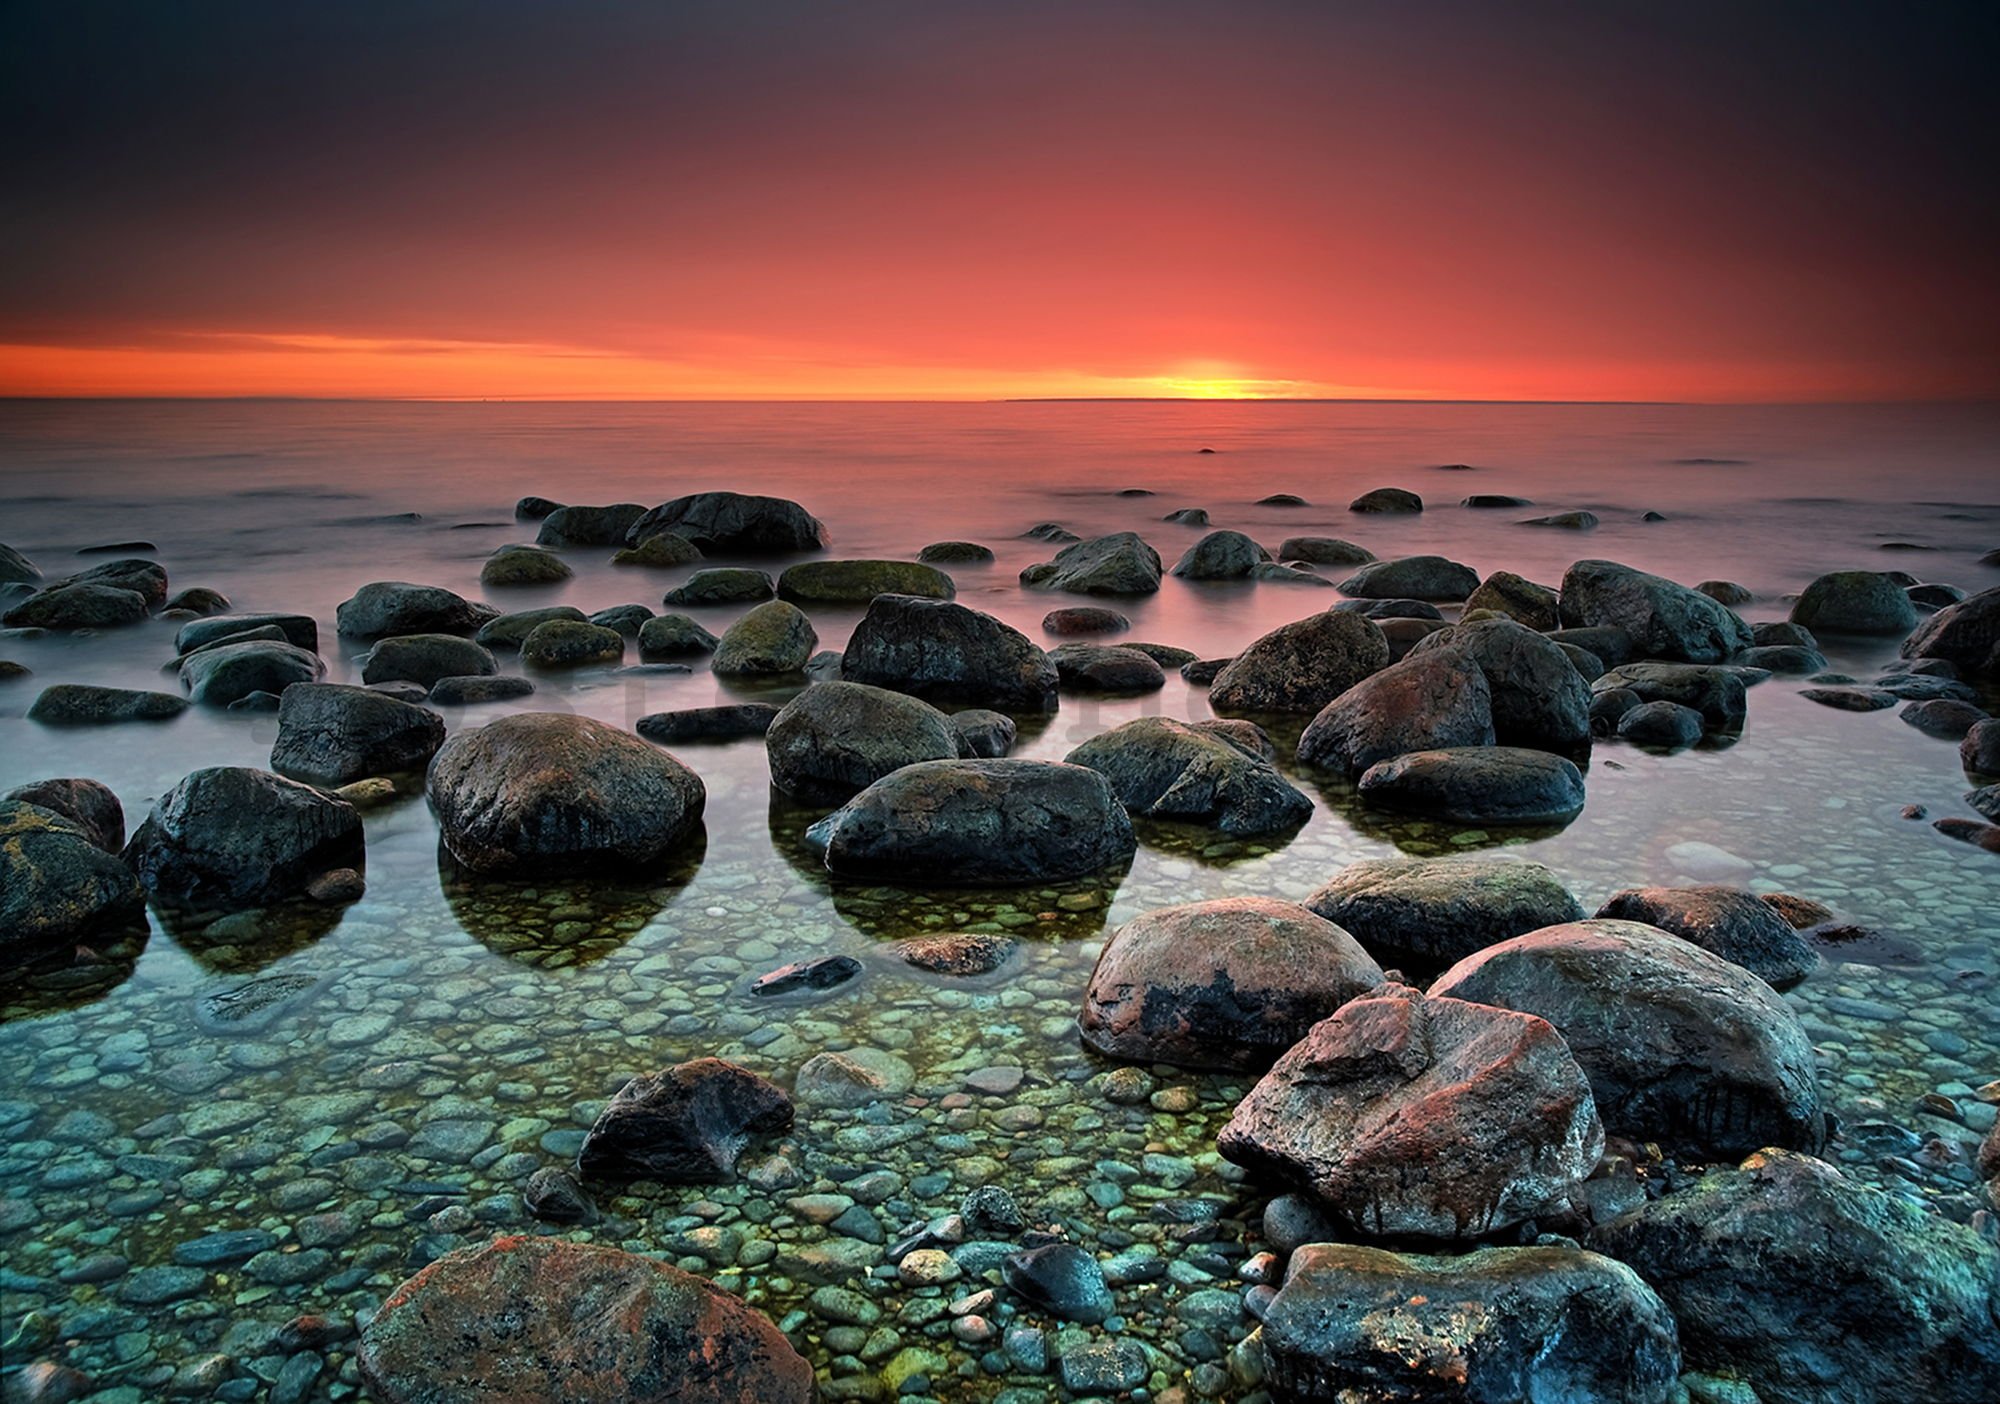 Fototapeta vliesová: Kameny na pláži (1) - 184x254 cm